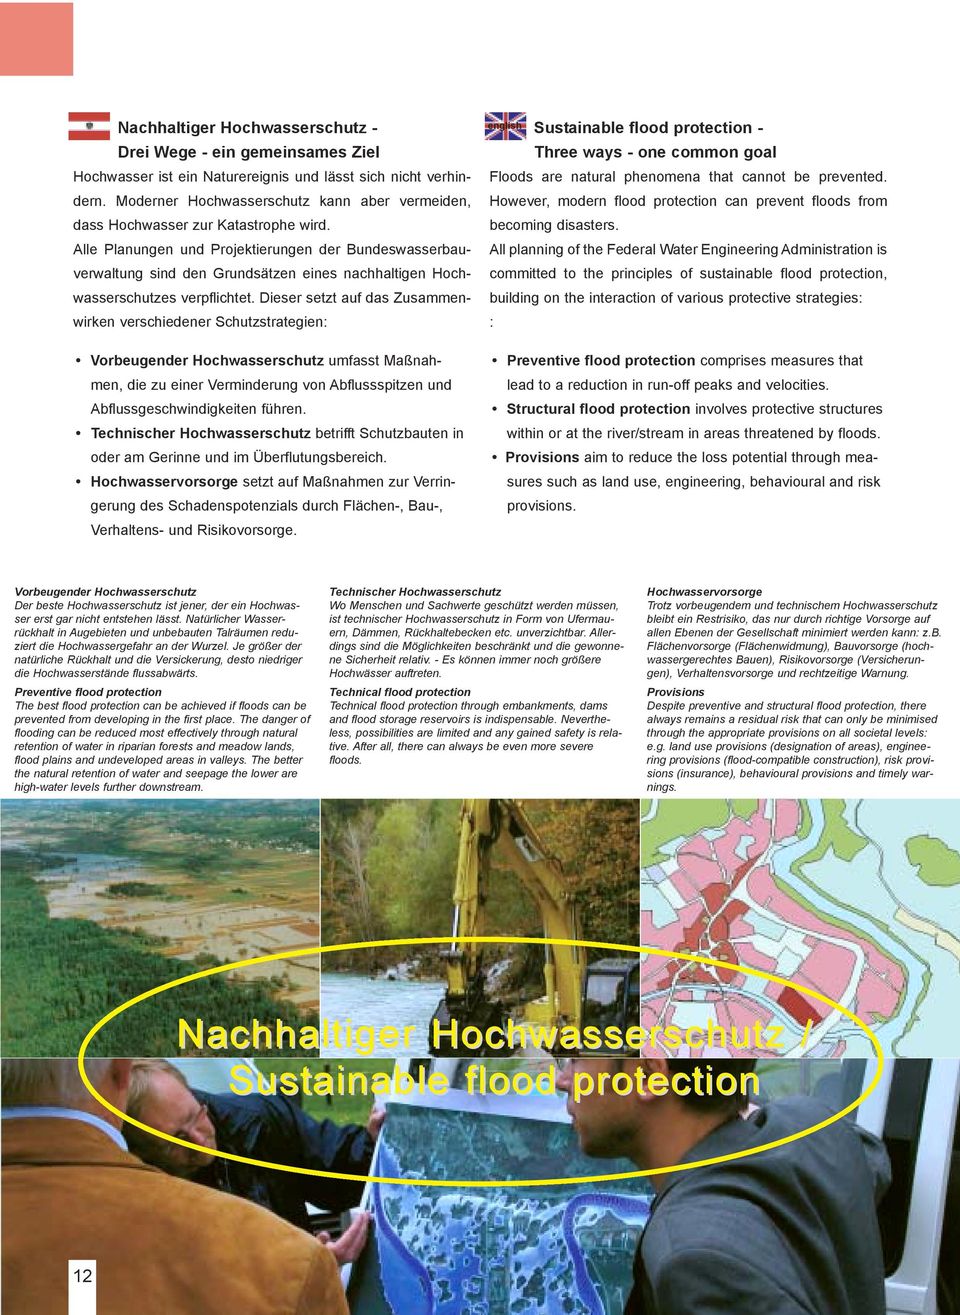 Alle Planungen und Projektierungen der Bundeswasserbauverwaltung sind den Grundsätzen eines nachhaltigen Hochwasserschutzes verpflichtet.